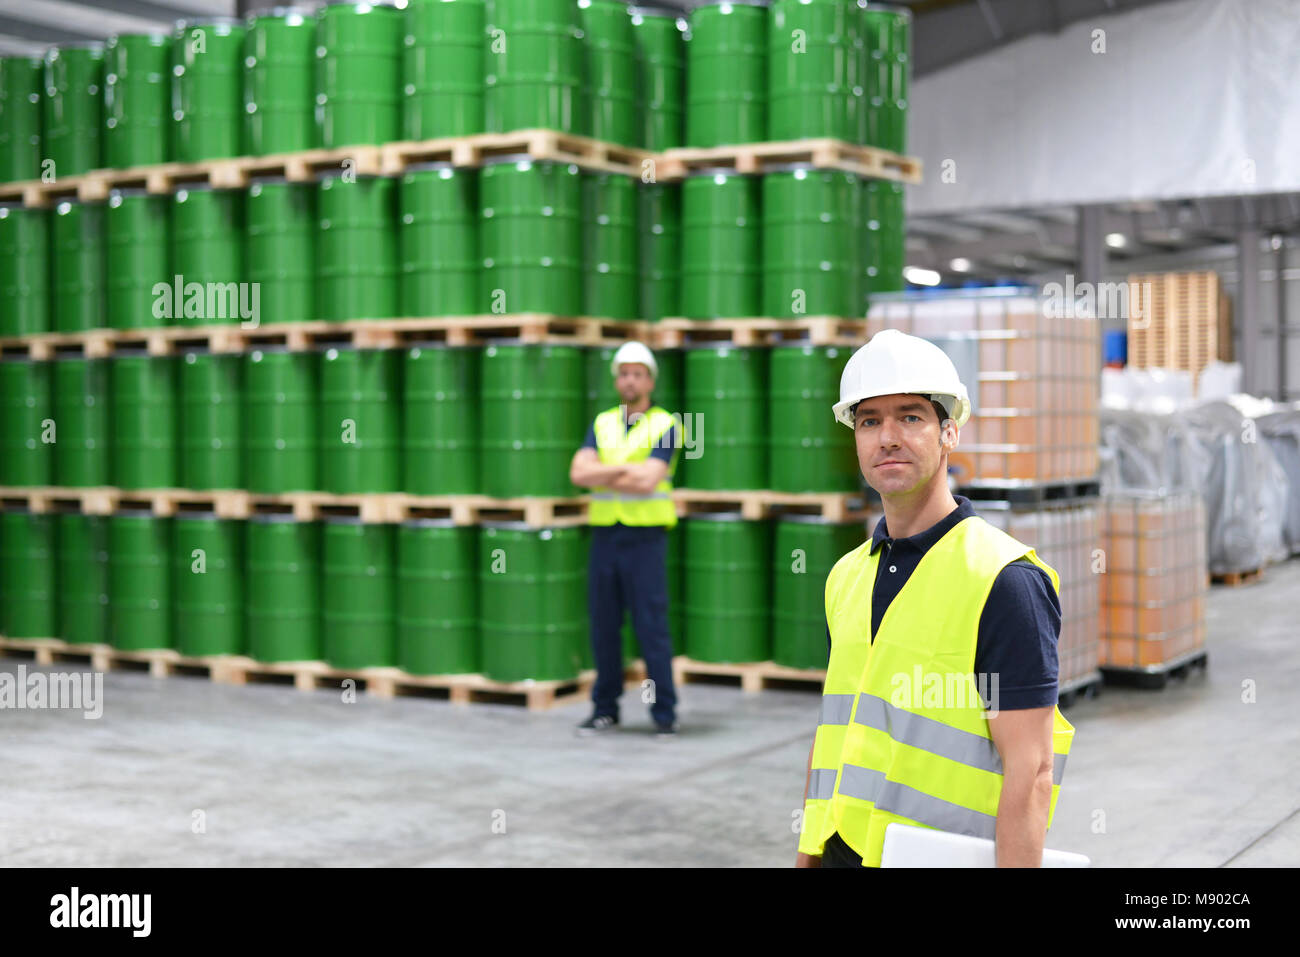 Groupe de travailleurs de l'industrie de la logistique travailler dans un entrepôt de produits chimiques Banque D'Images